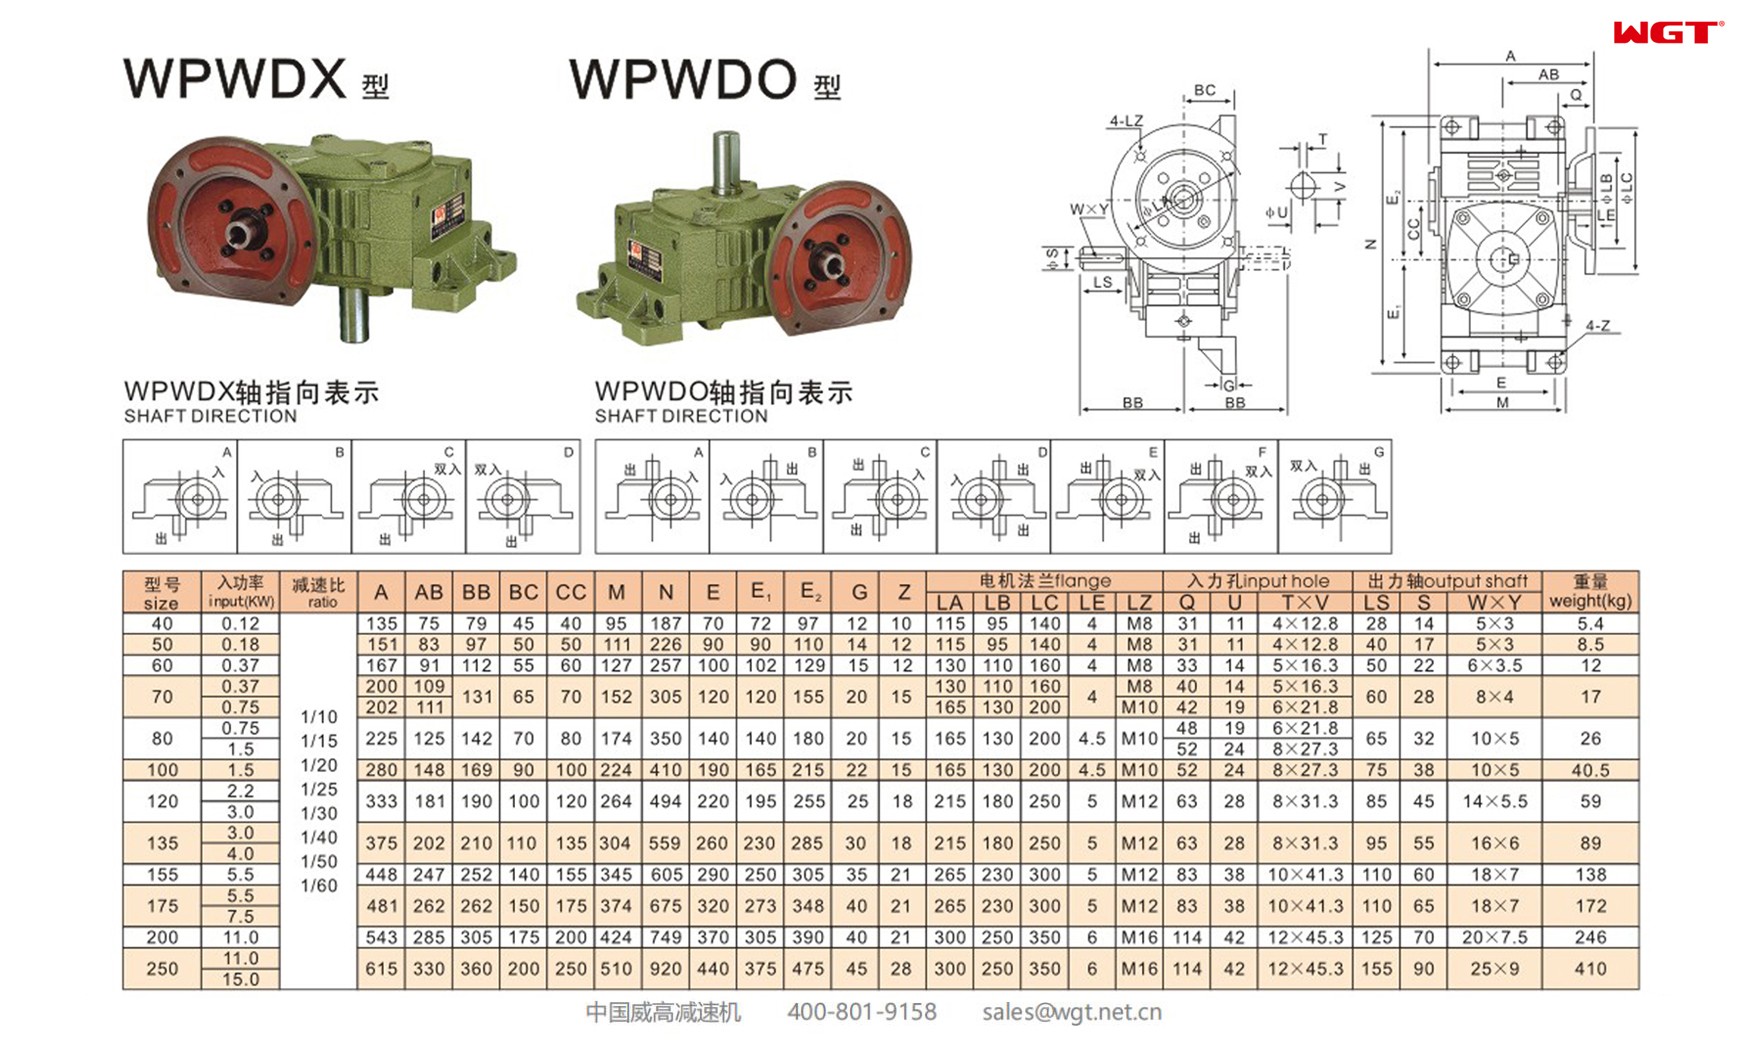 WPWDX200 worm gear reducer universal speed reducer